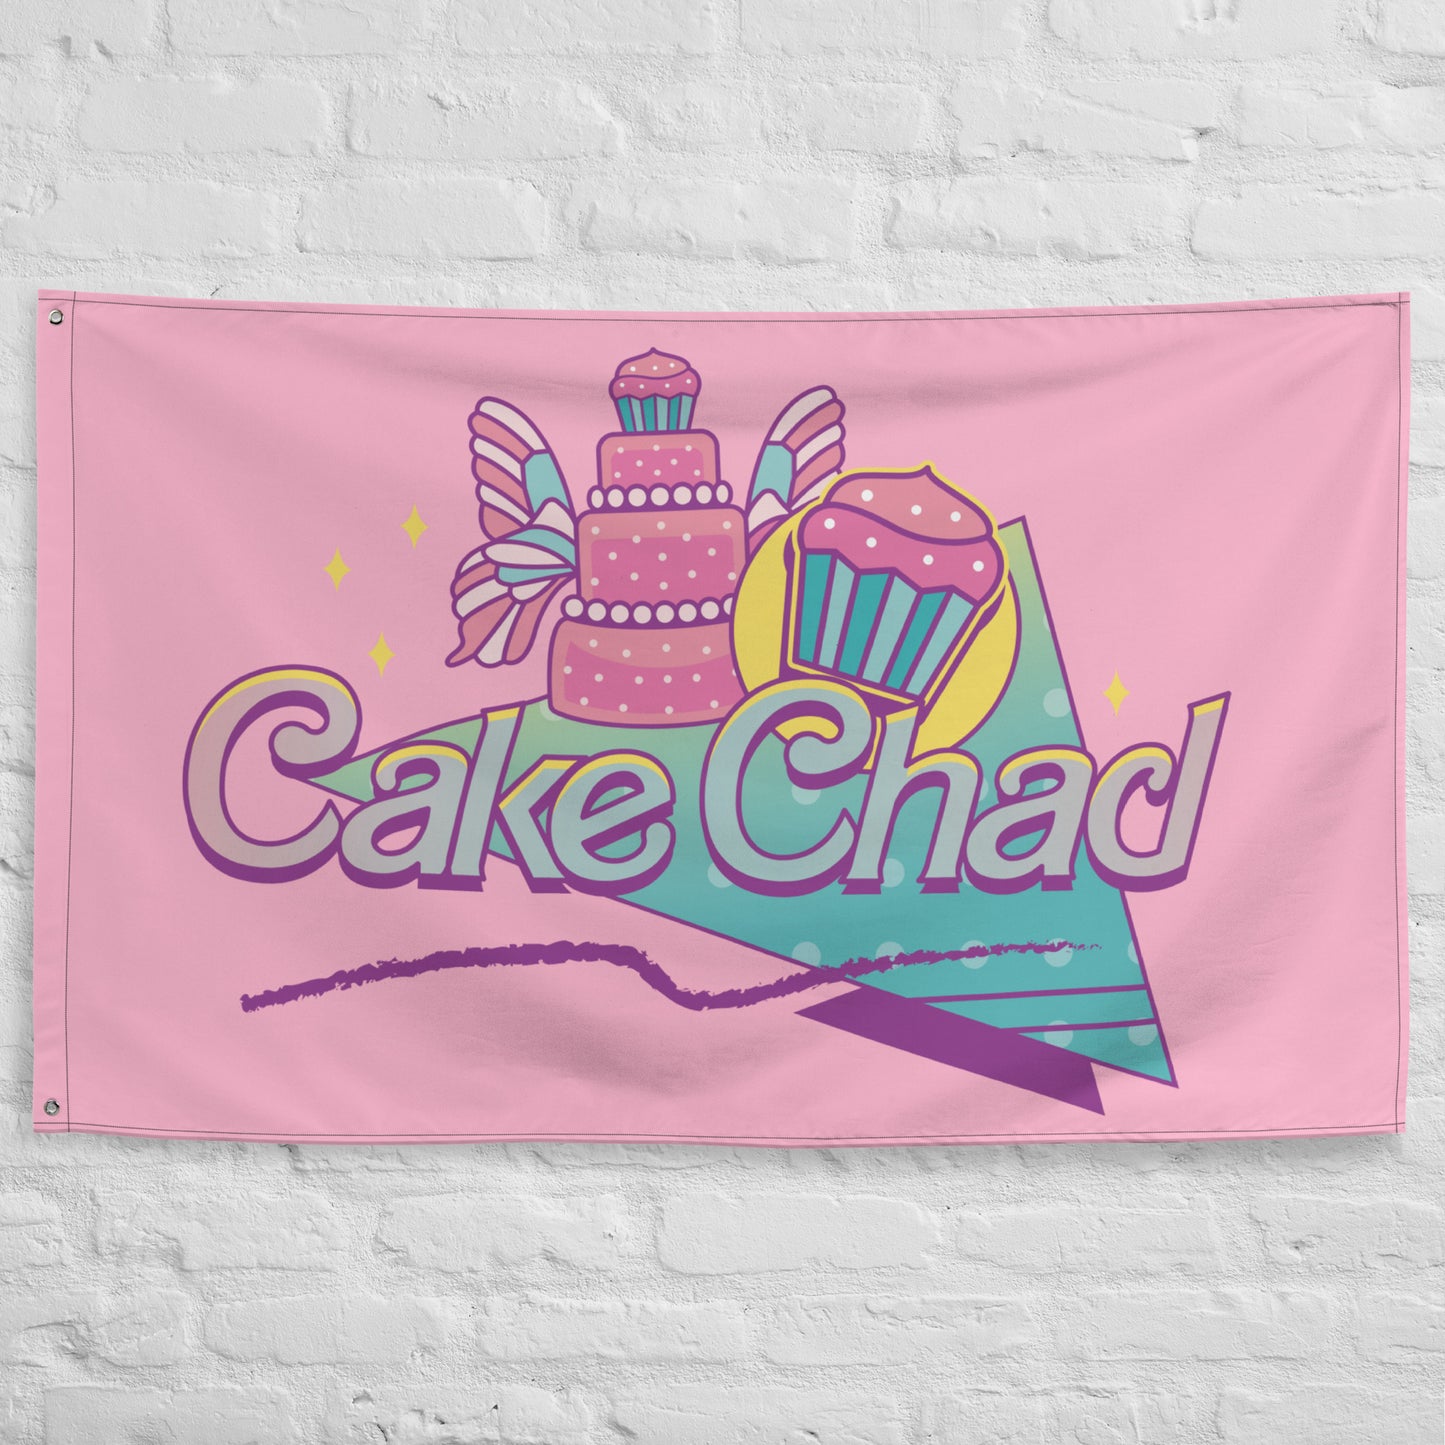 Cake Chad - Flag